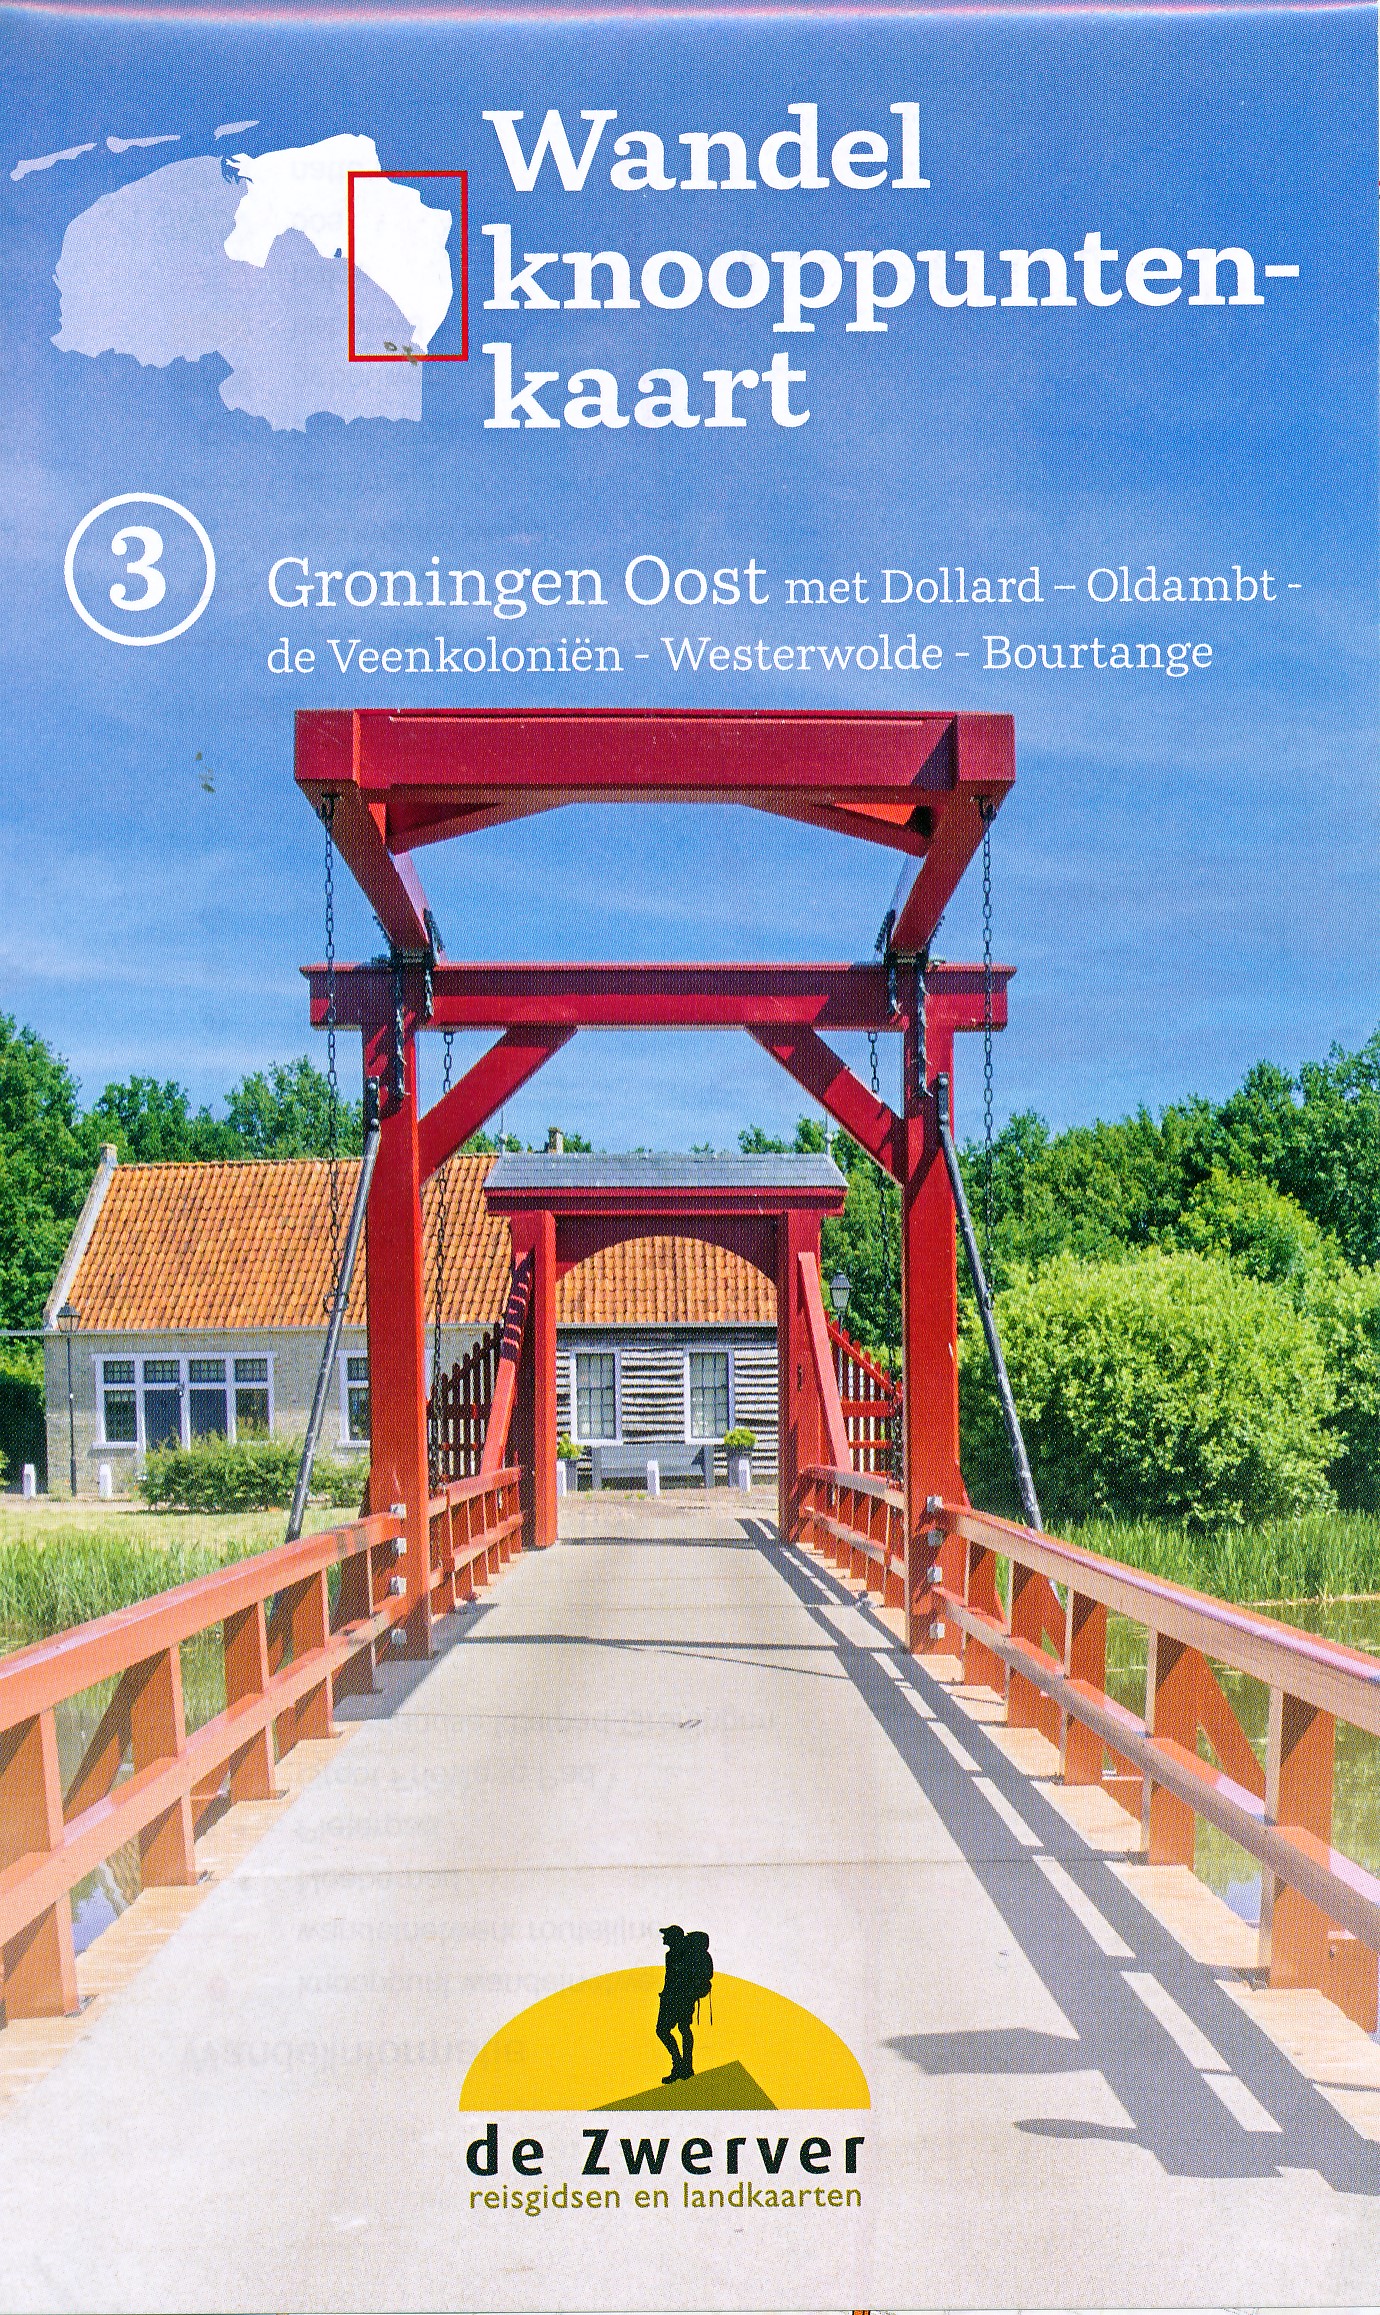 Online bestellen: Wandelknooppuntenkaart - Wandelkaart 3 Groningen oost | Reisboekwinkel de Zwerver